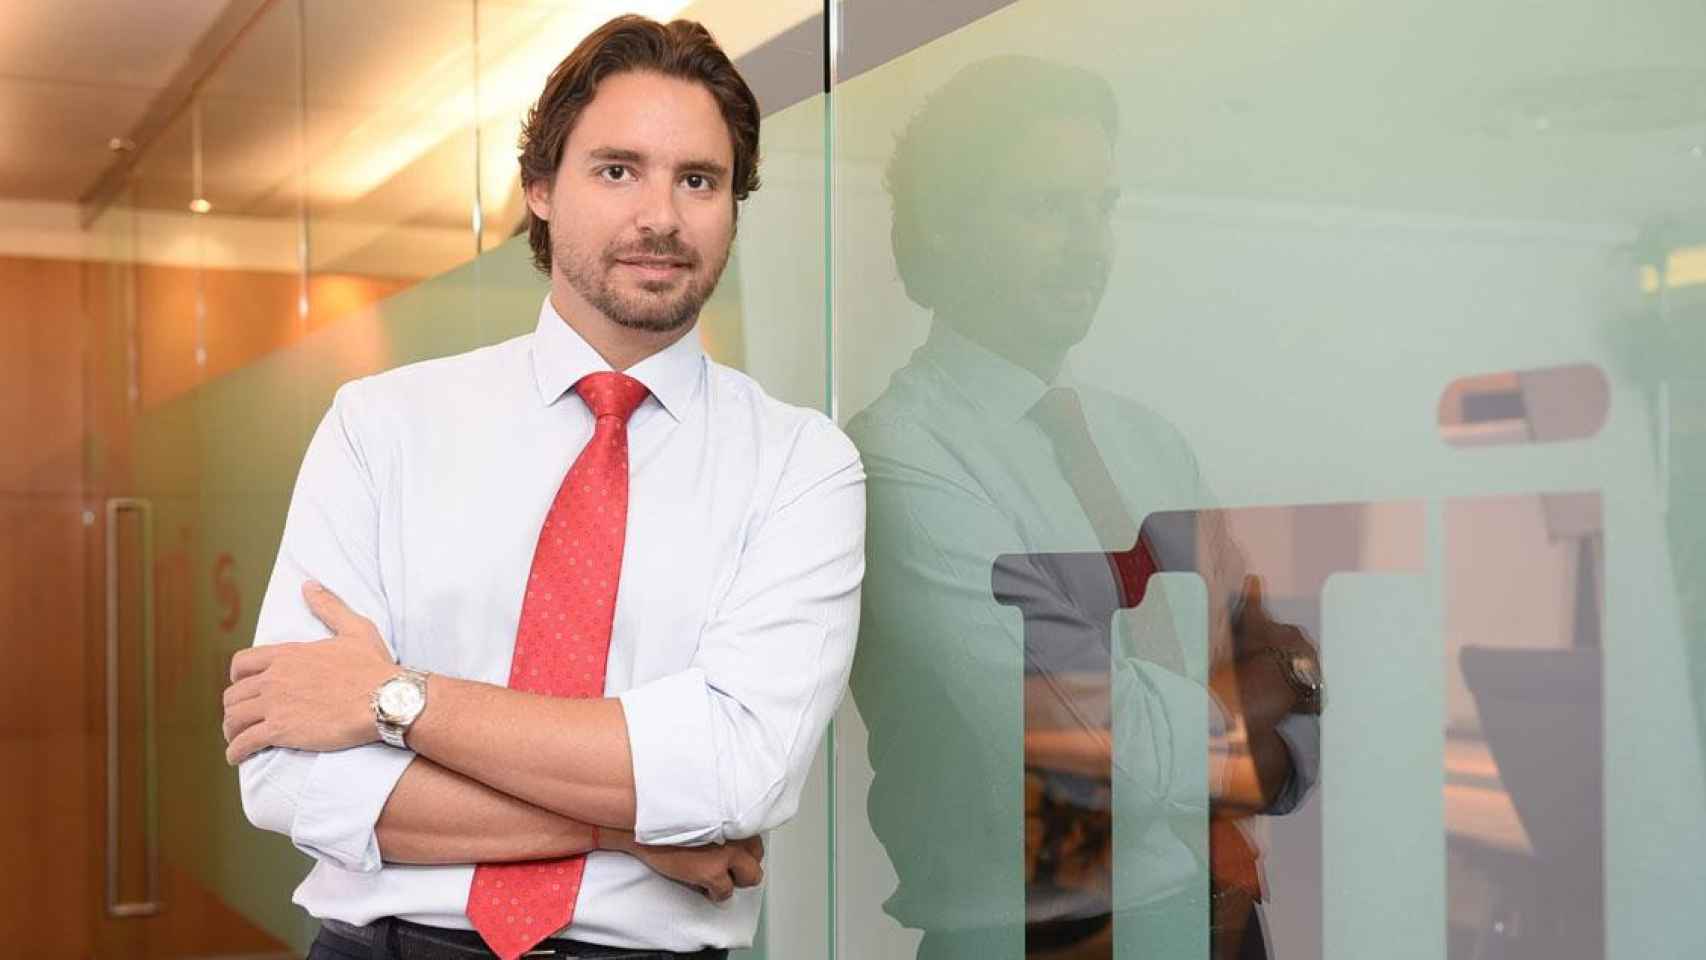 Guilherme Silva, responsable de las ventas en el mercado de Iberia de la tabacalera japonesa JTI / JTI